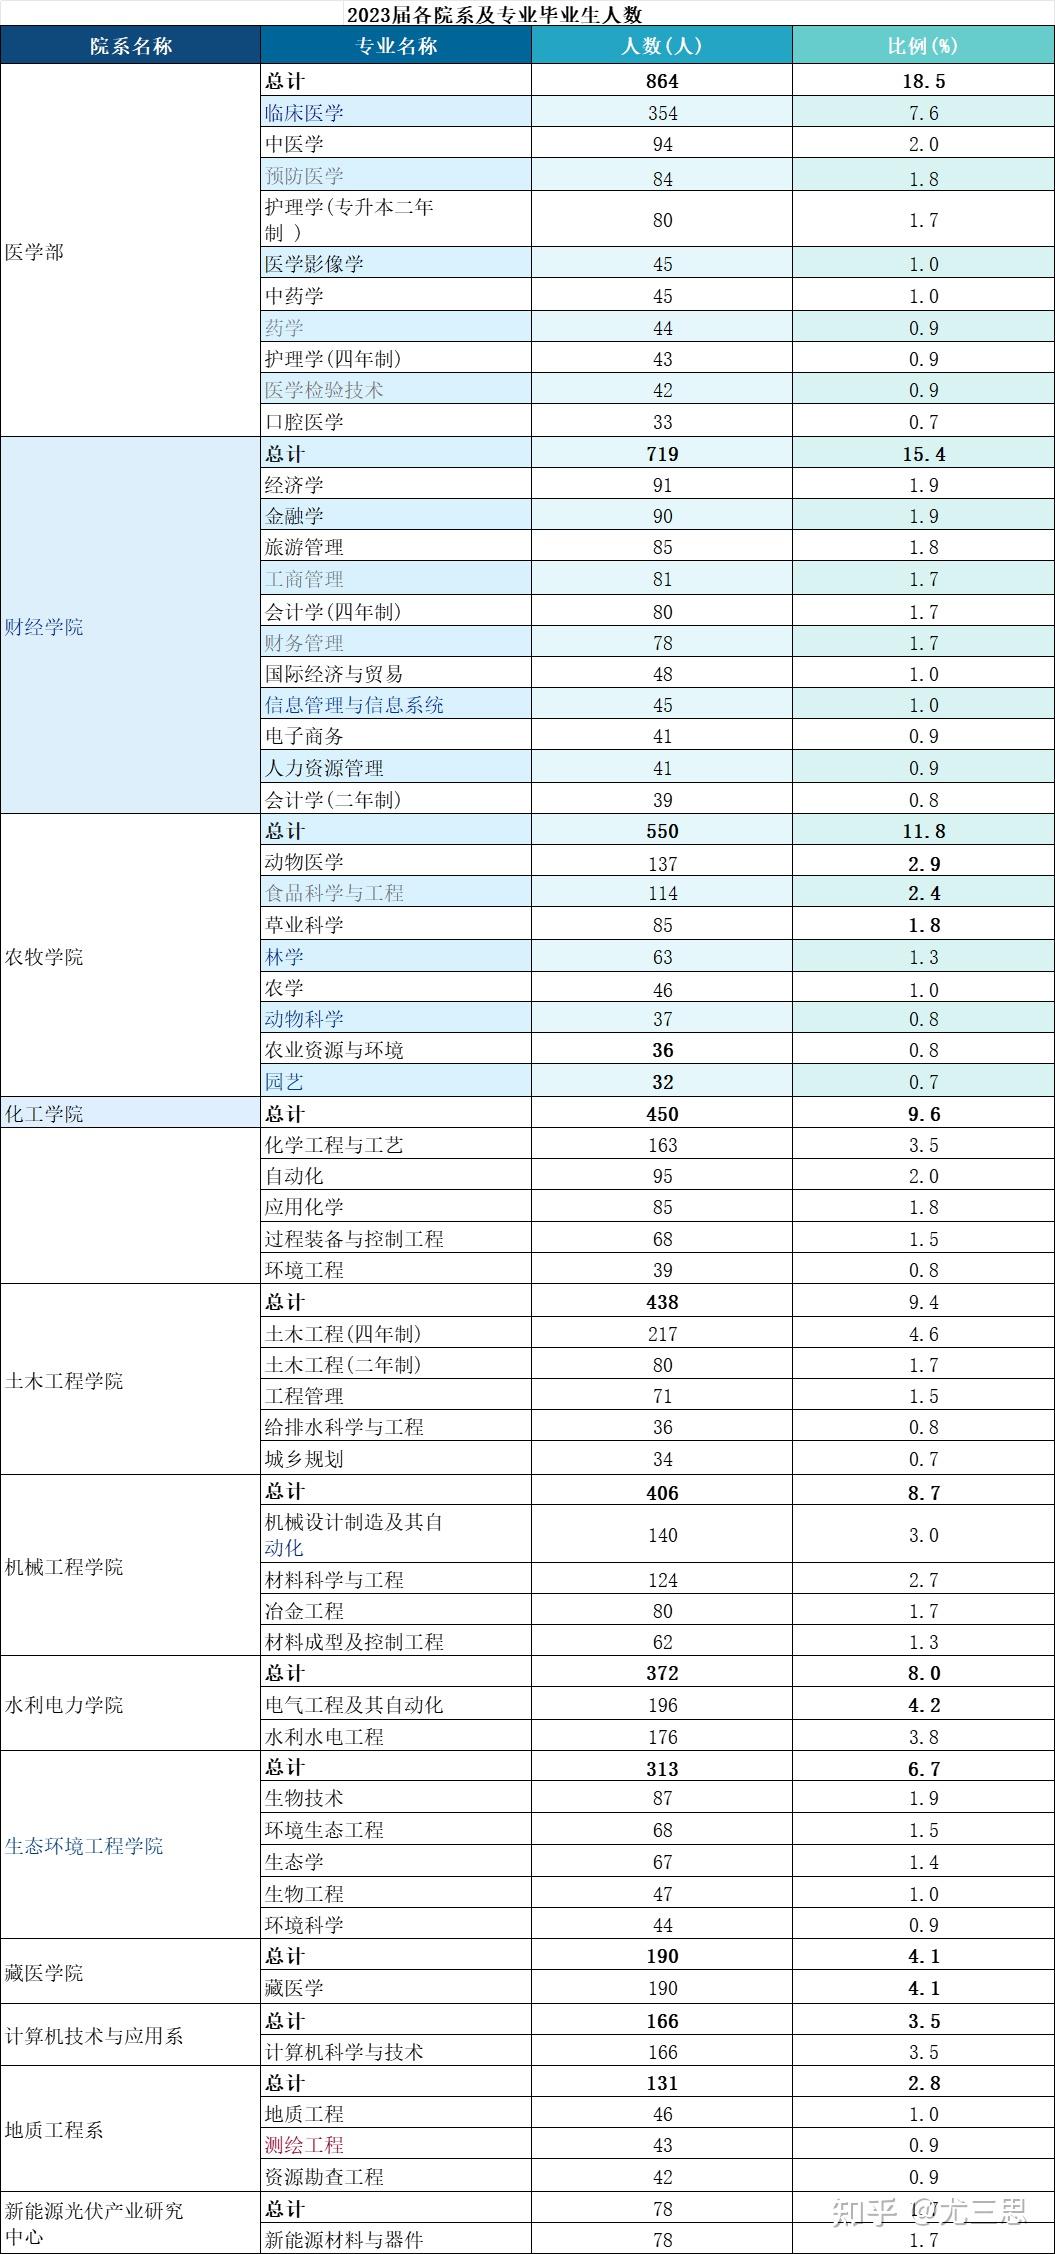 青海大学:国家211工程重点建设大学,双一流建设高校